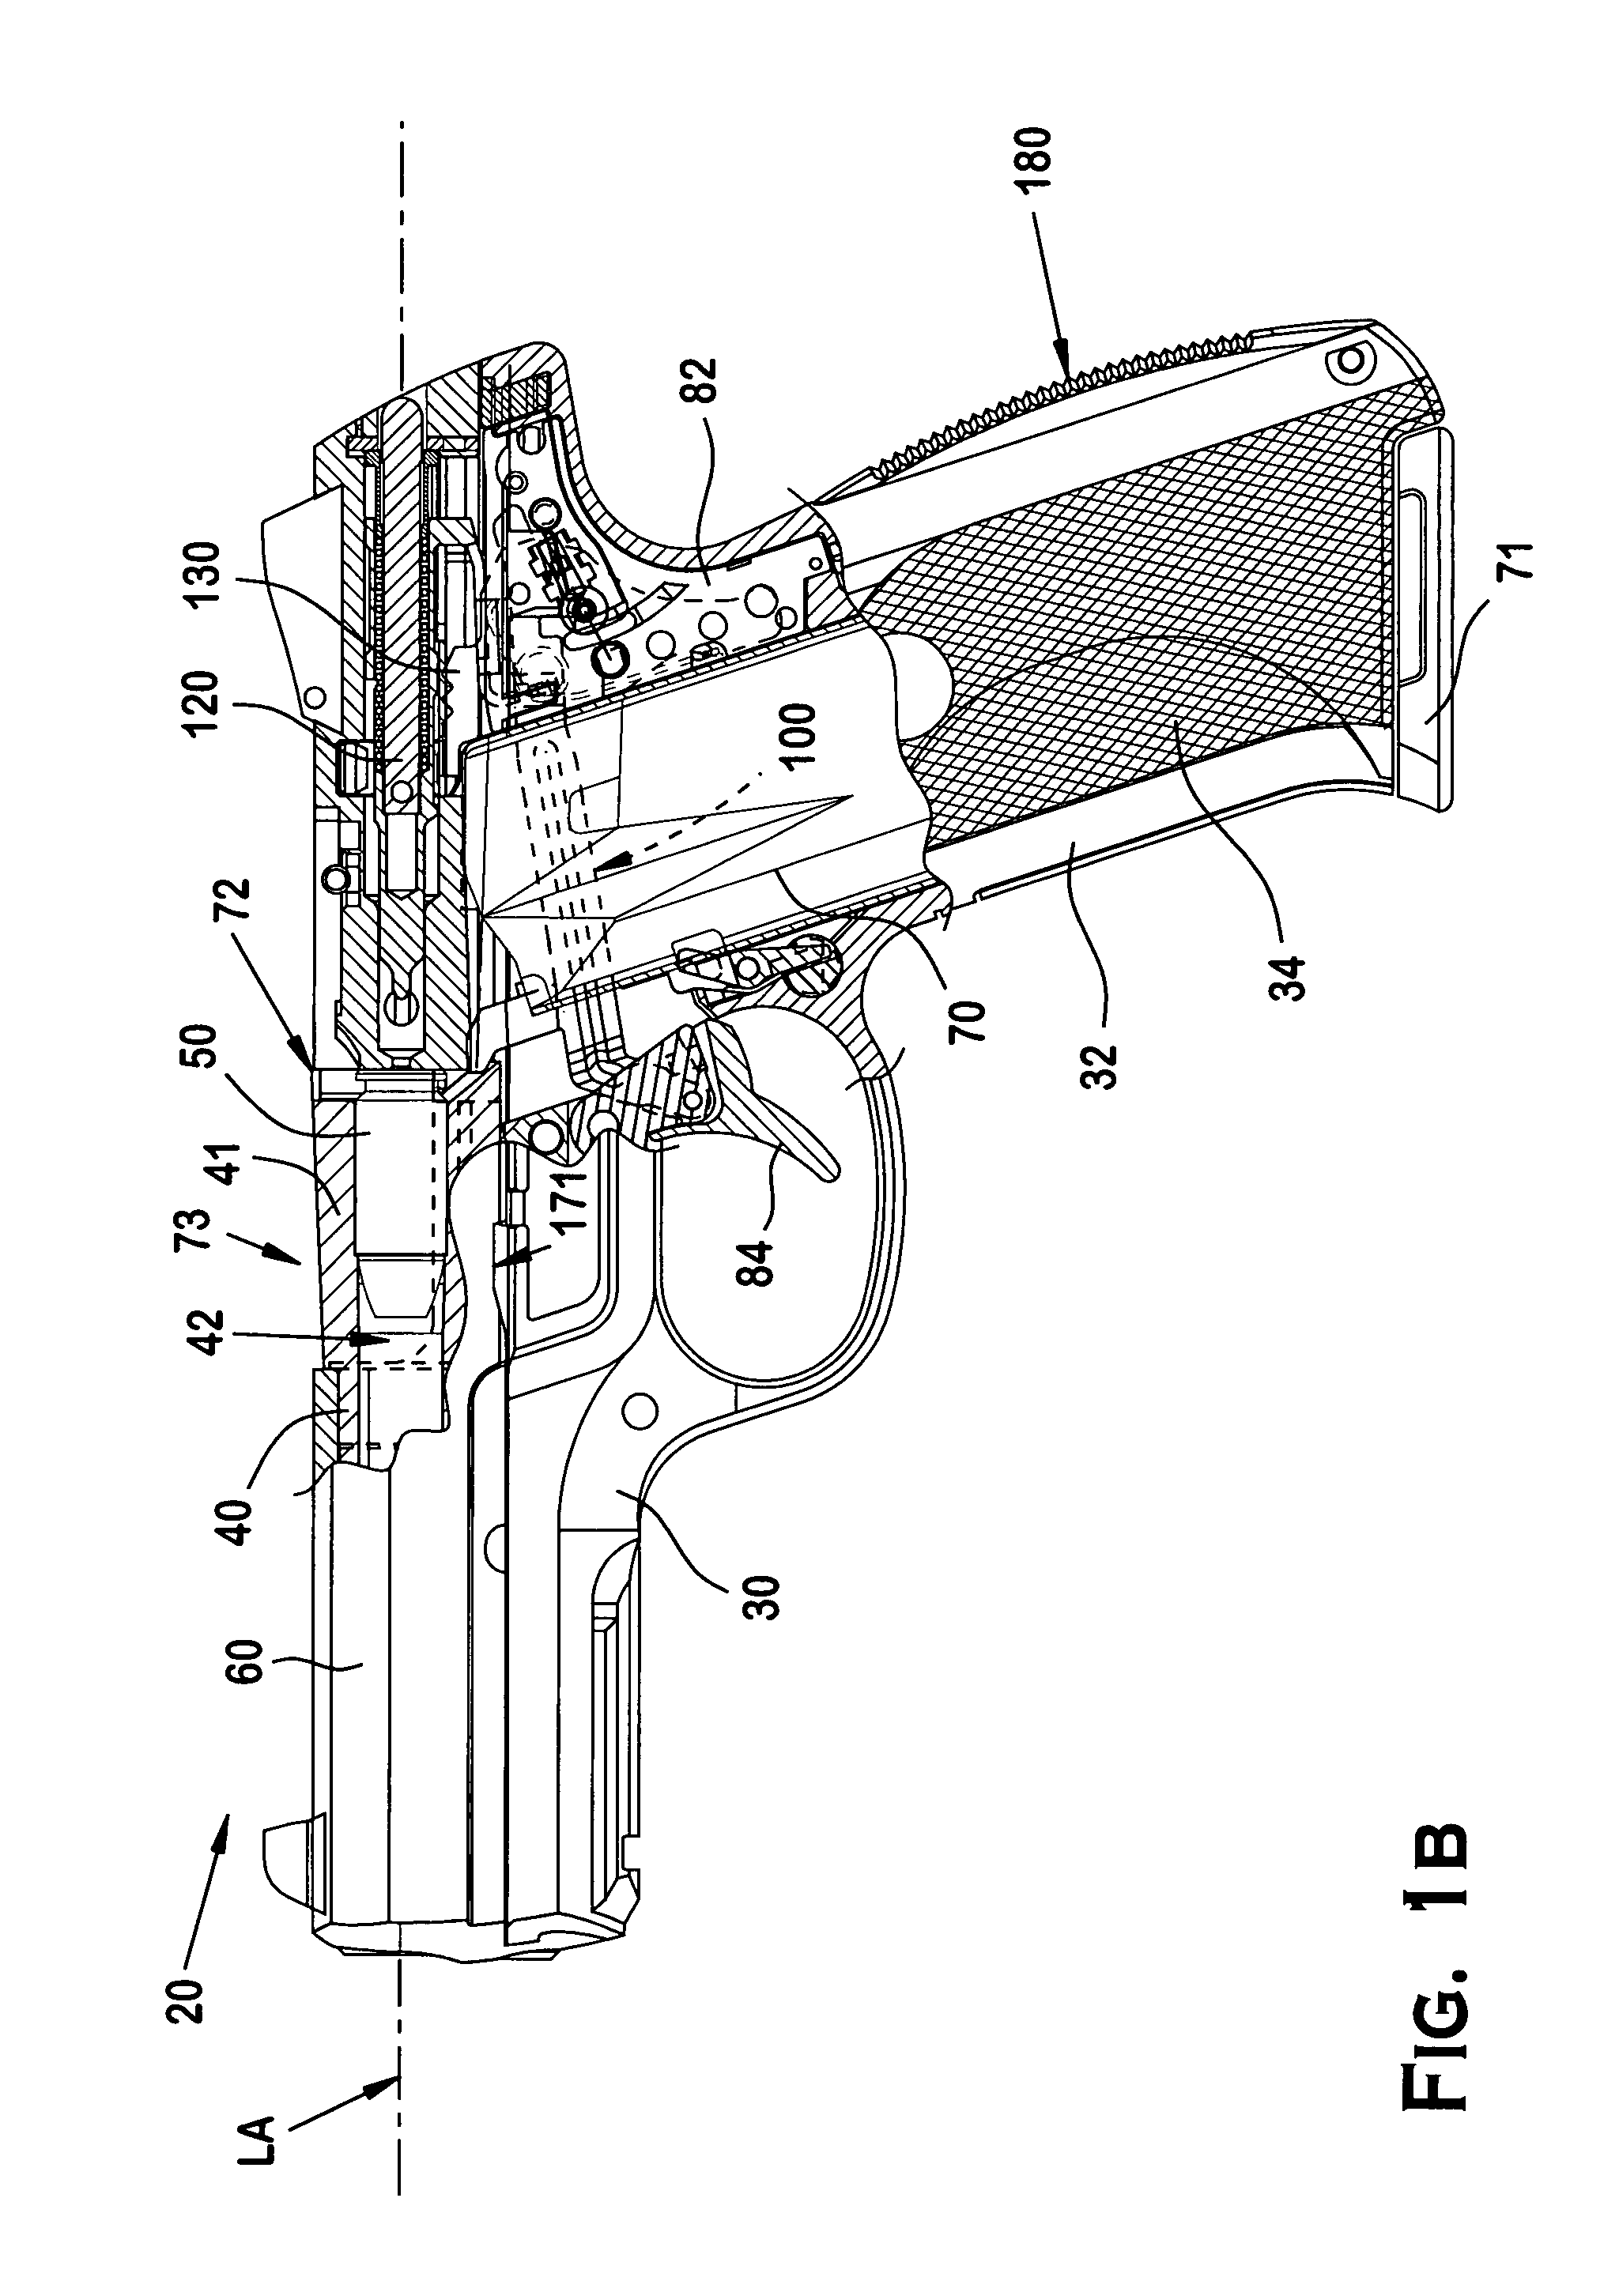 Striker-fired firearm